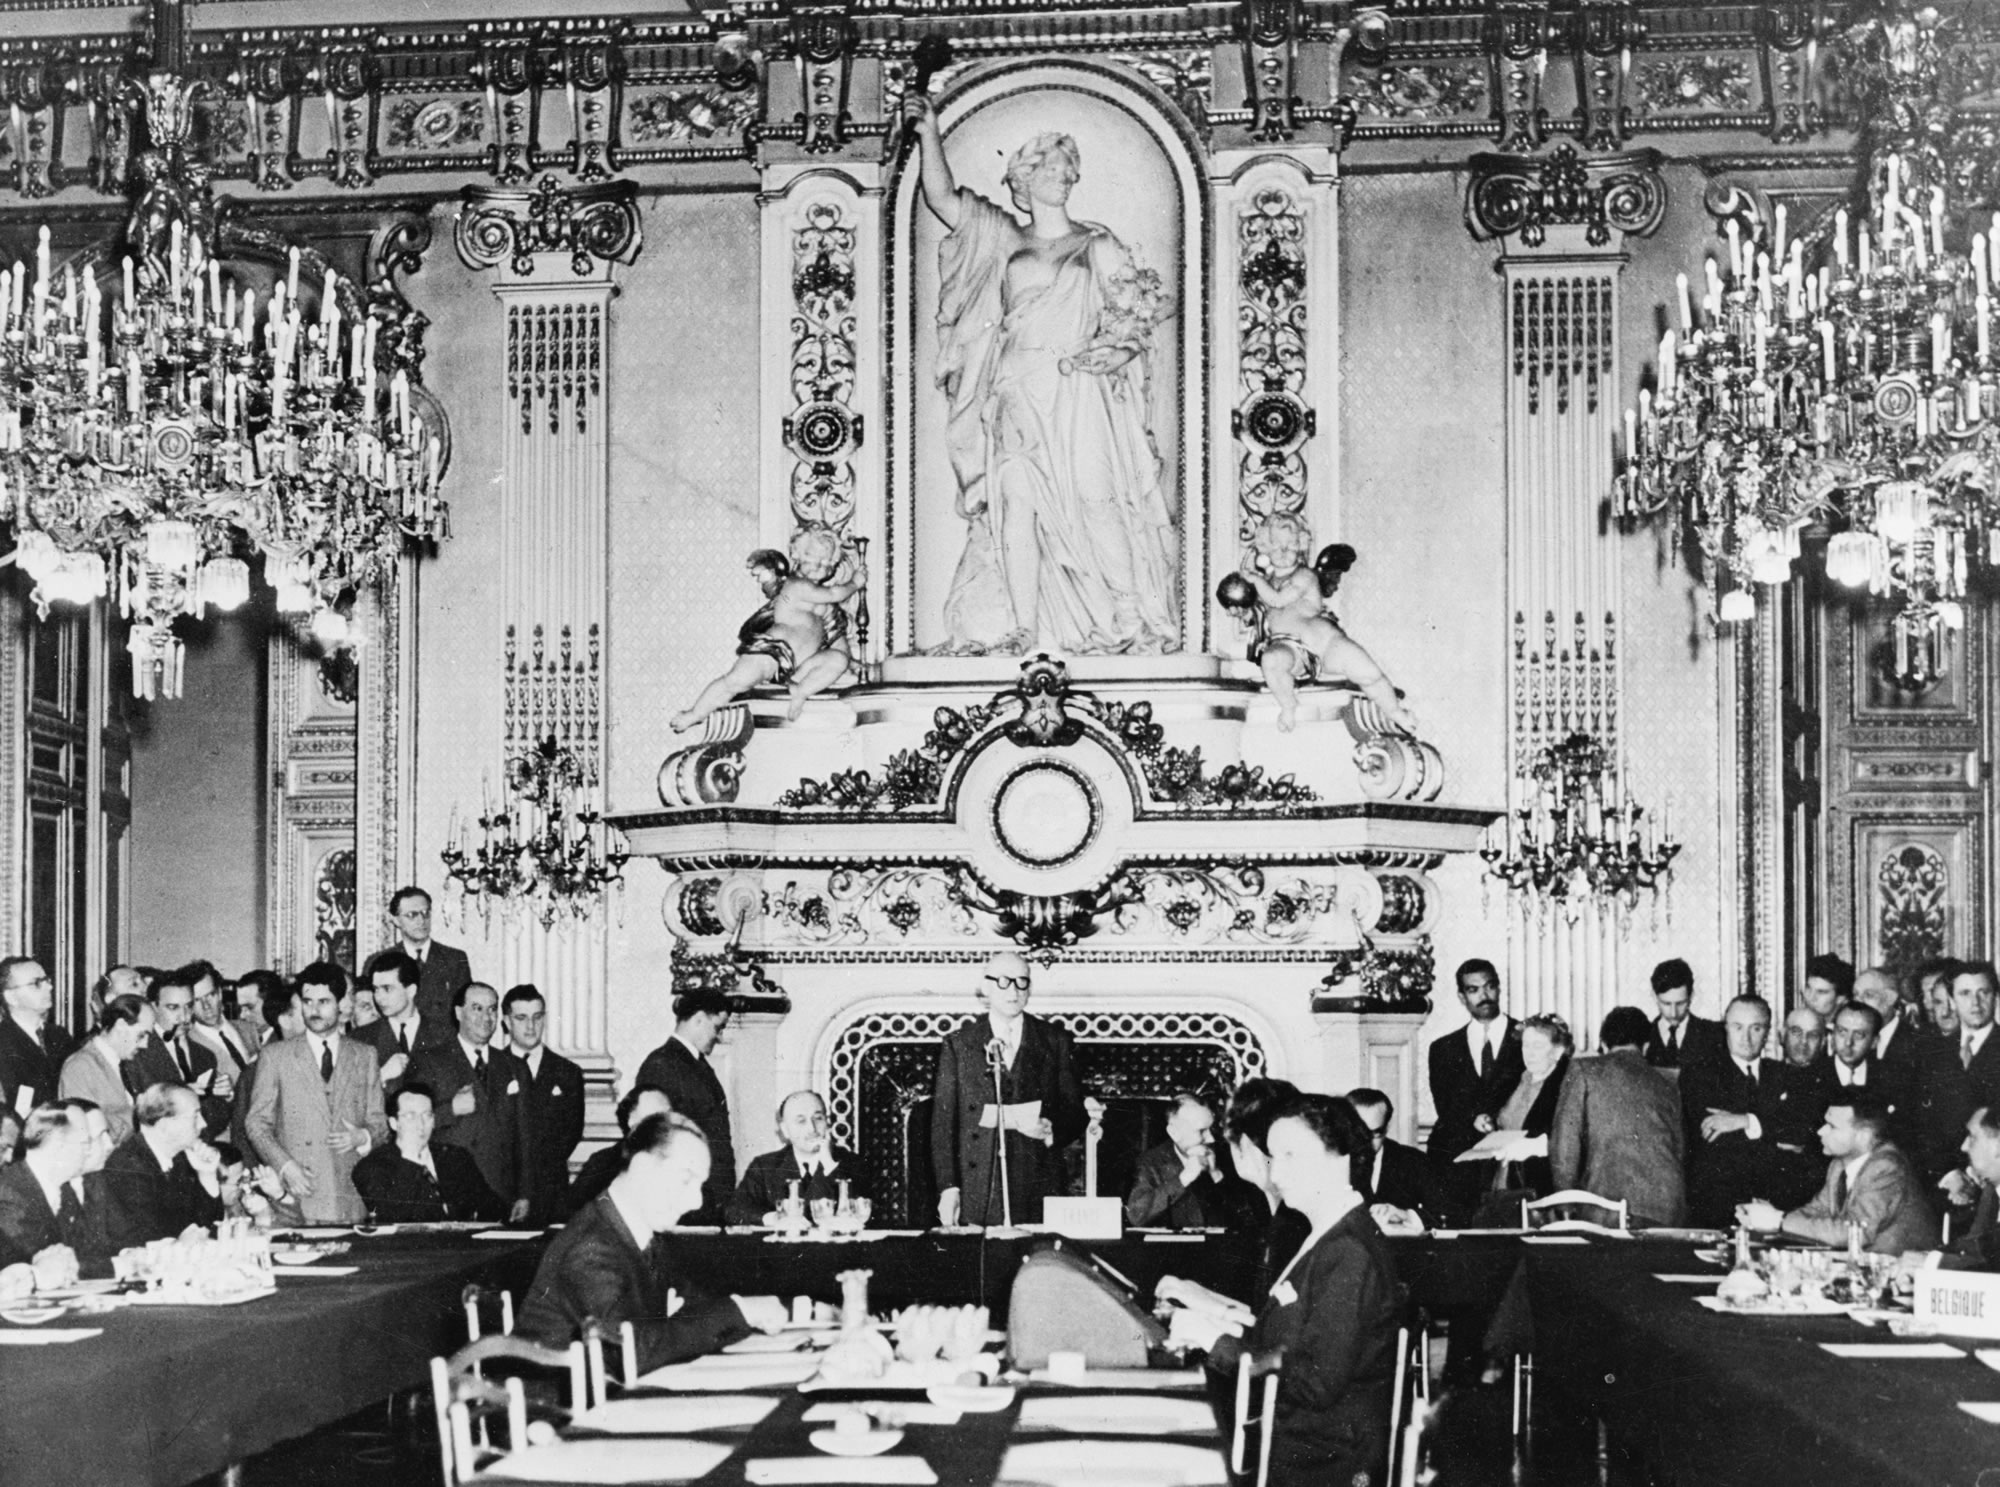 Robert Schuman, în centrul unei săli impunătoare, în fața unui șemineu cu decorațiuni elaborate, adresându-se delegaților așezați în fața sa sau în jurul mesei.